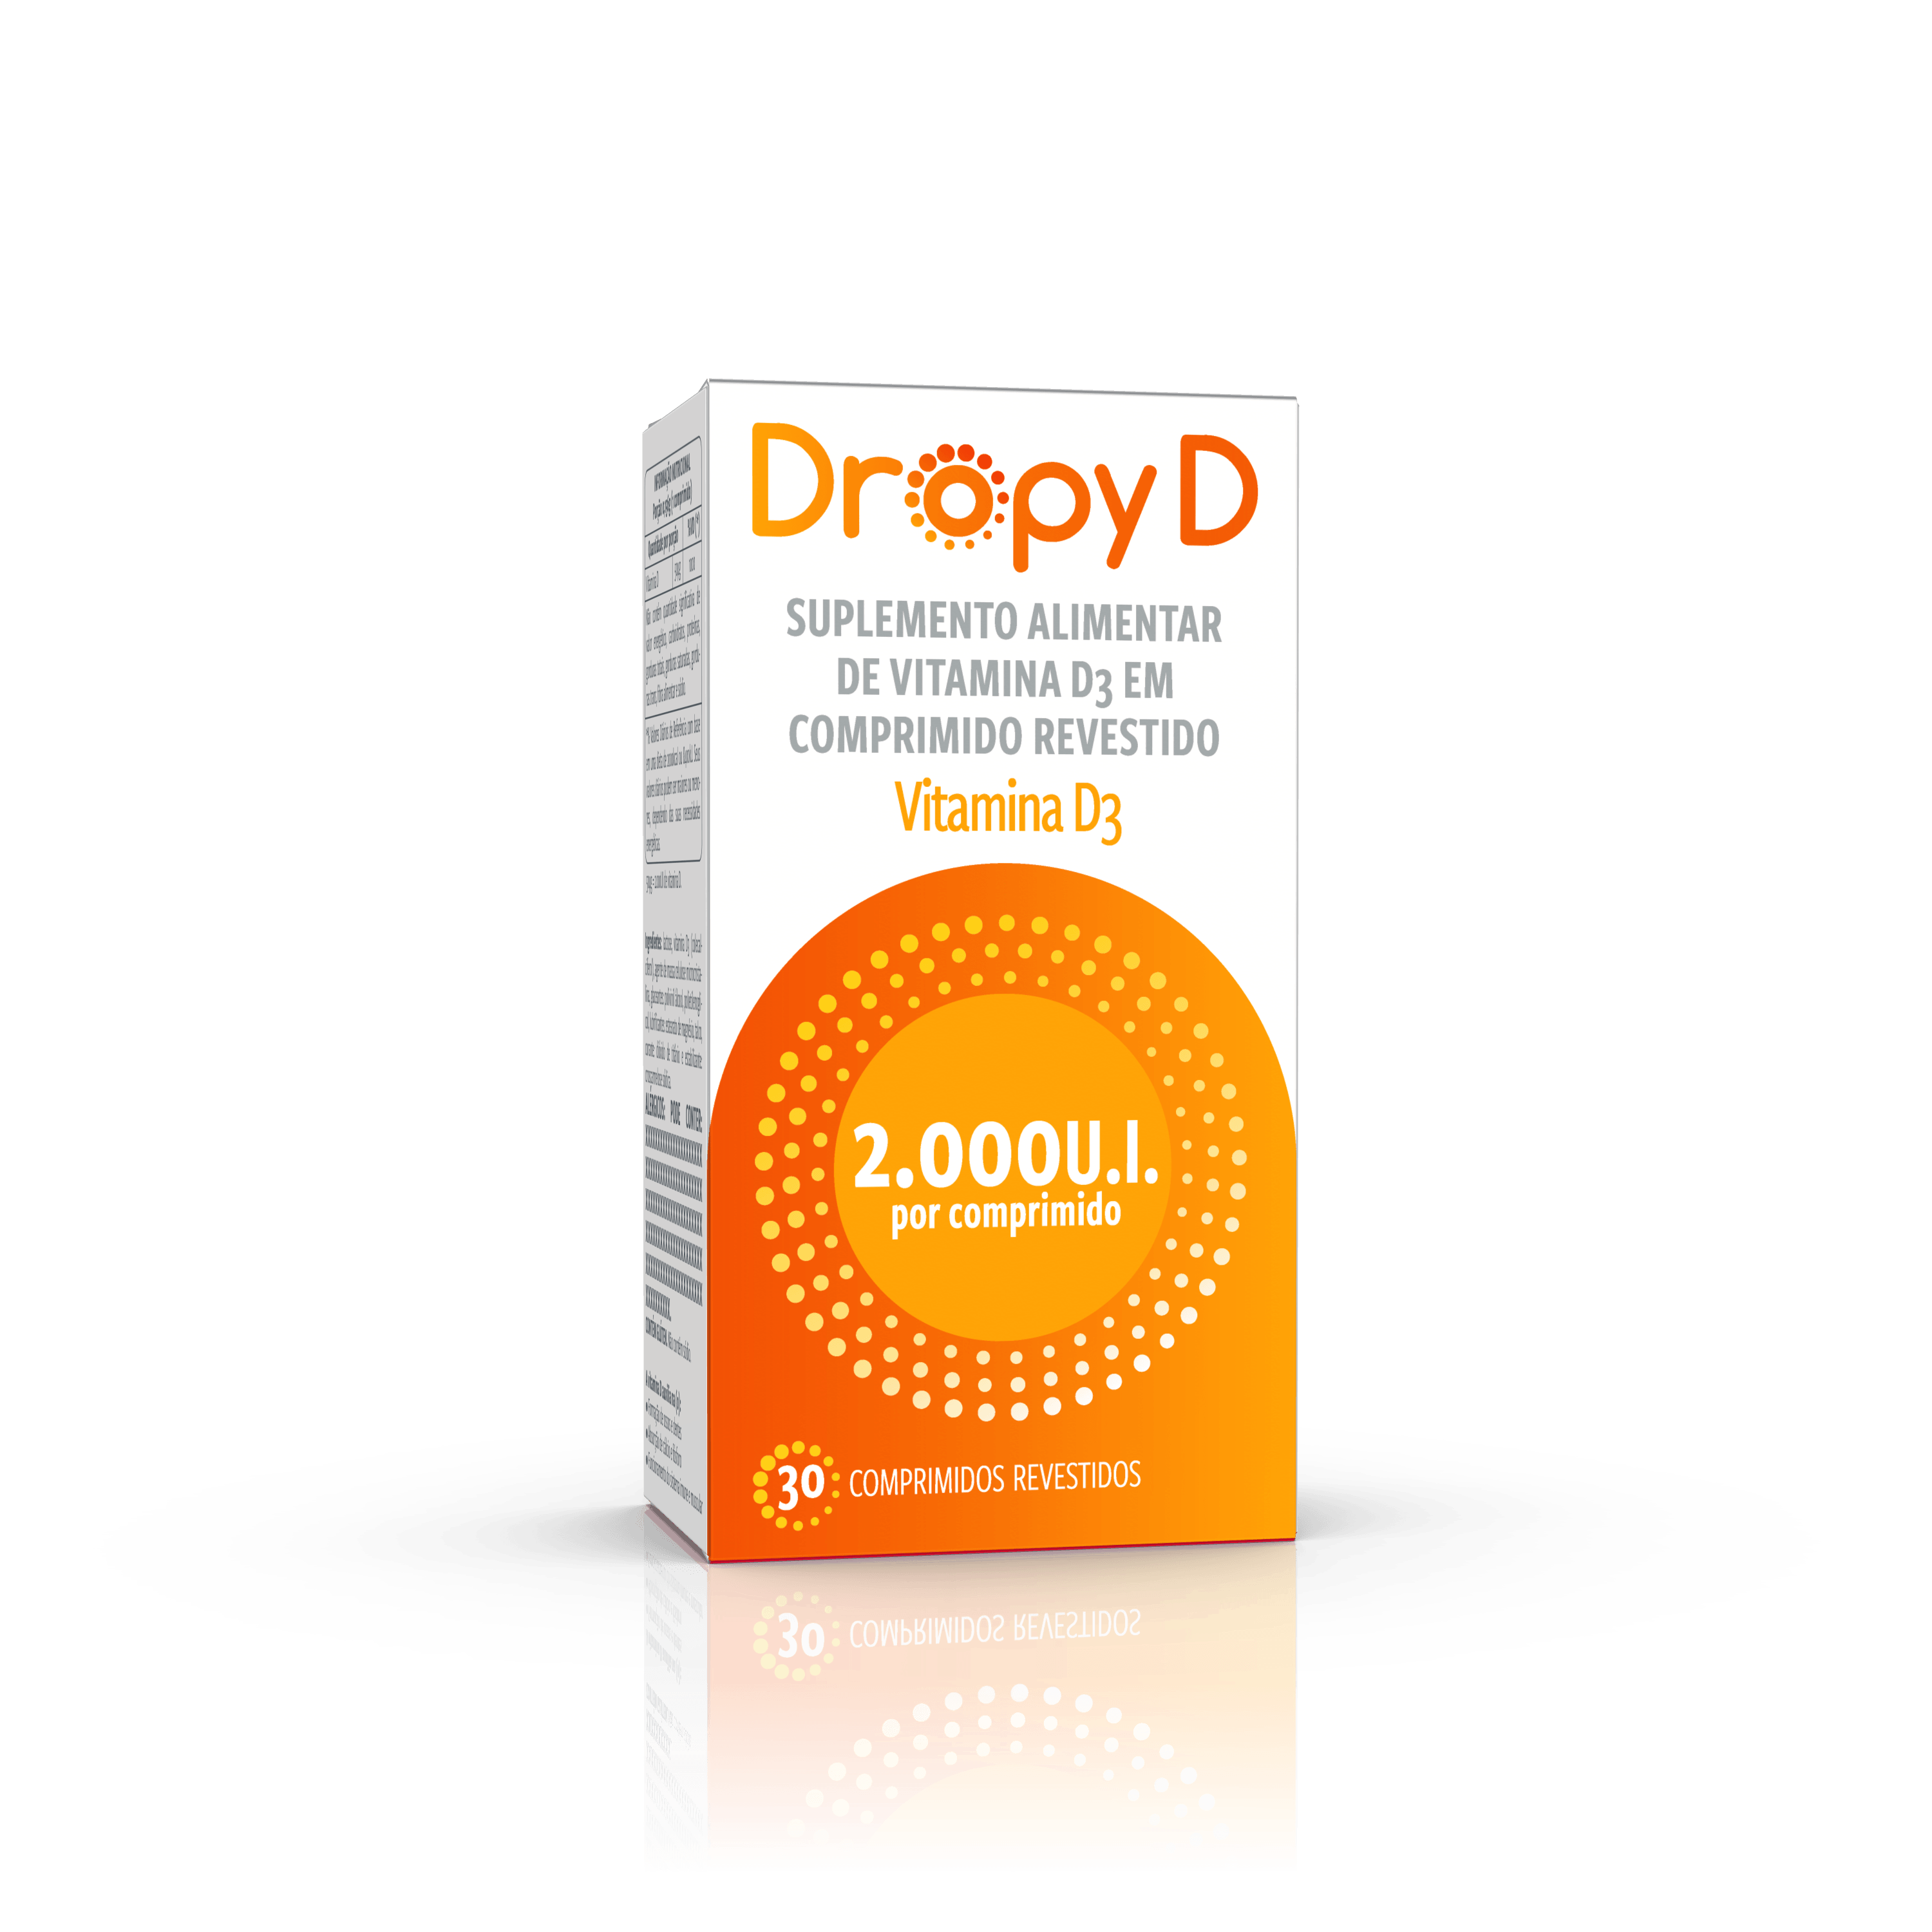 Suplemento de Vitamina D Ofolato D 1.000UI com 30 comprimidos